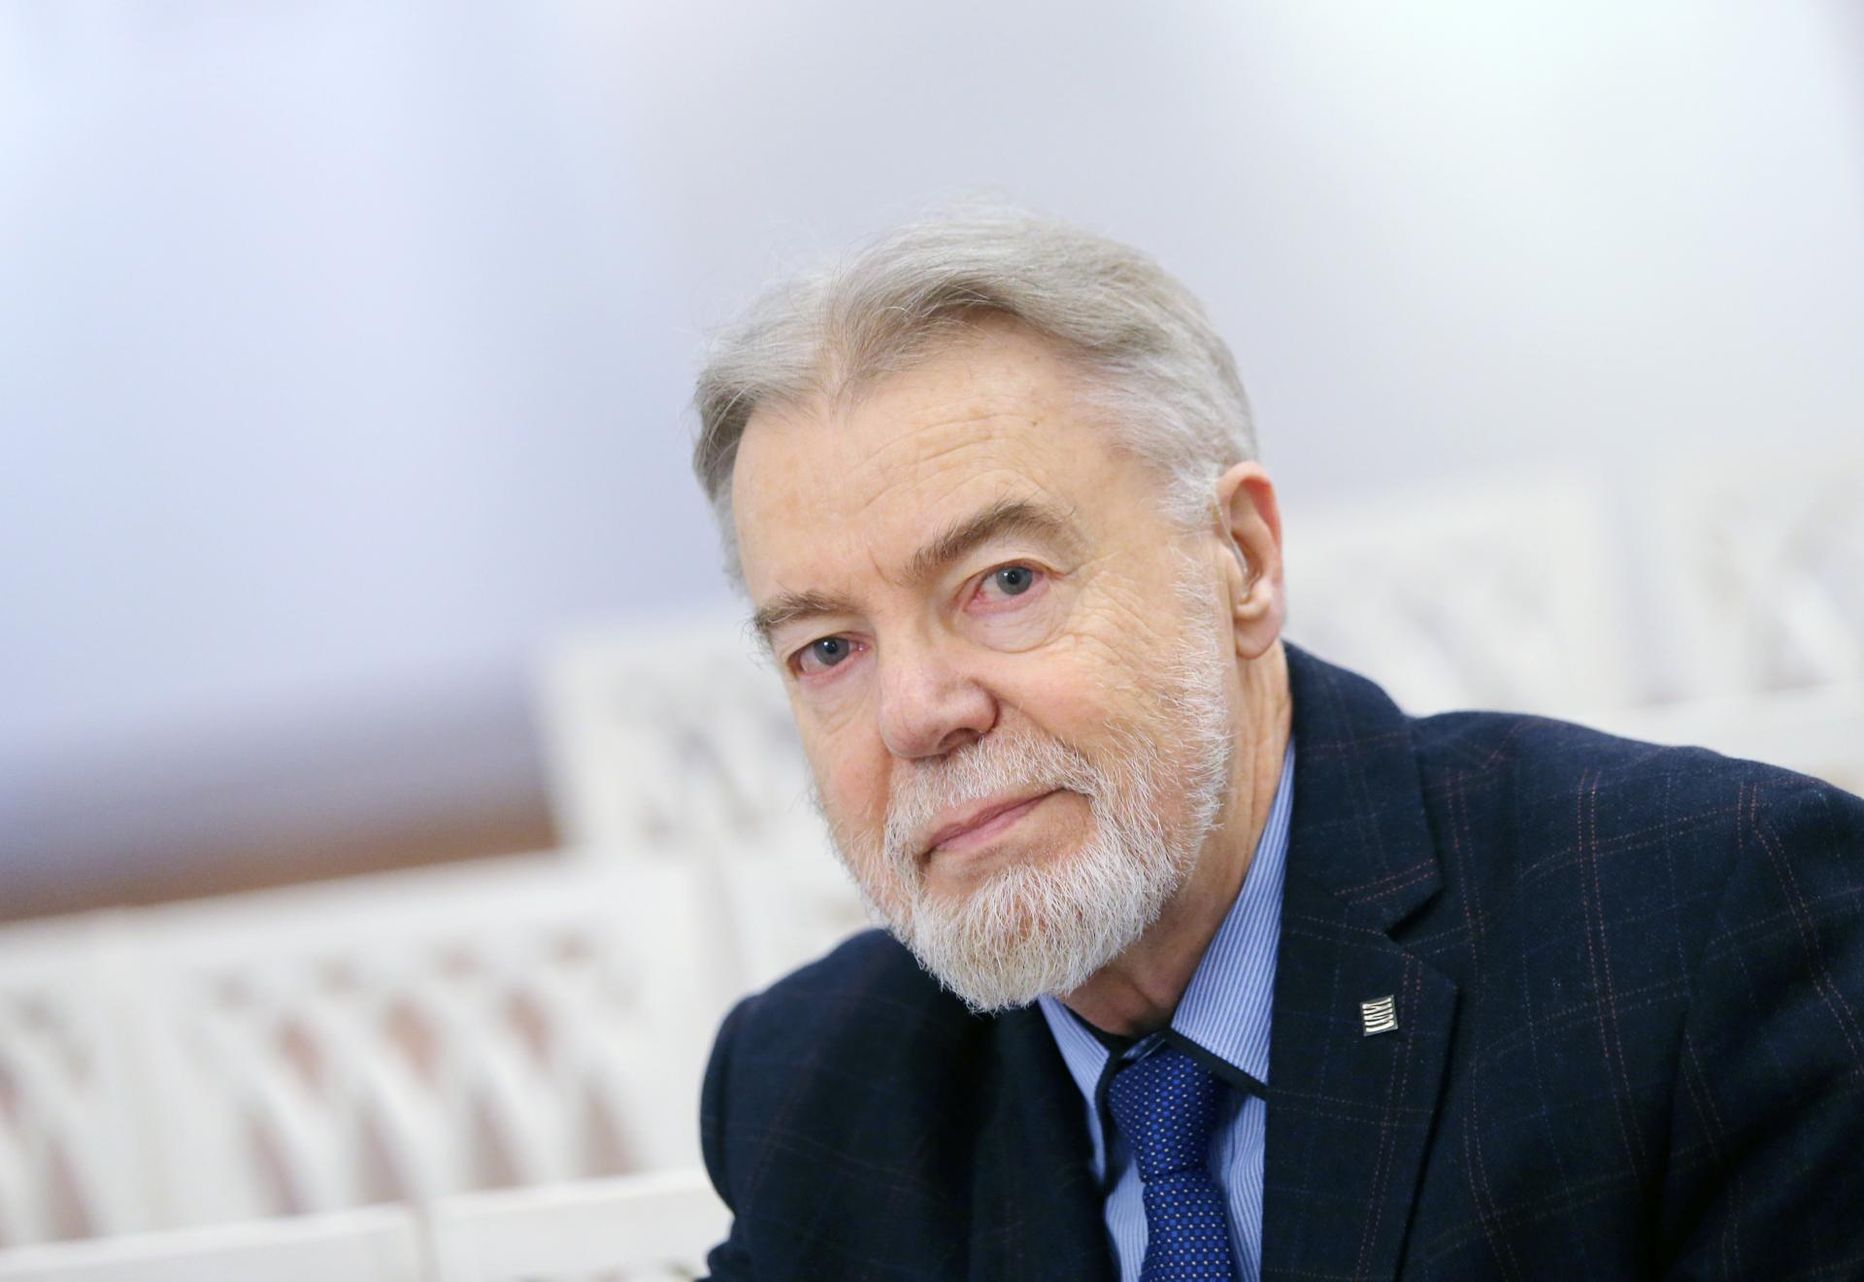 Kirjandusteadlane, tõlkija, luuletaja ja esseist Jüri Talvet Tartu ülikooli muuseumi valges saalis.